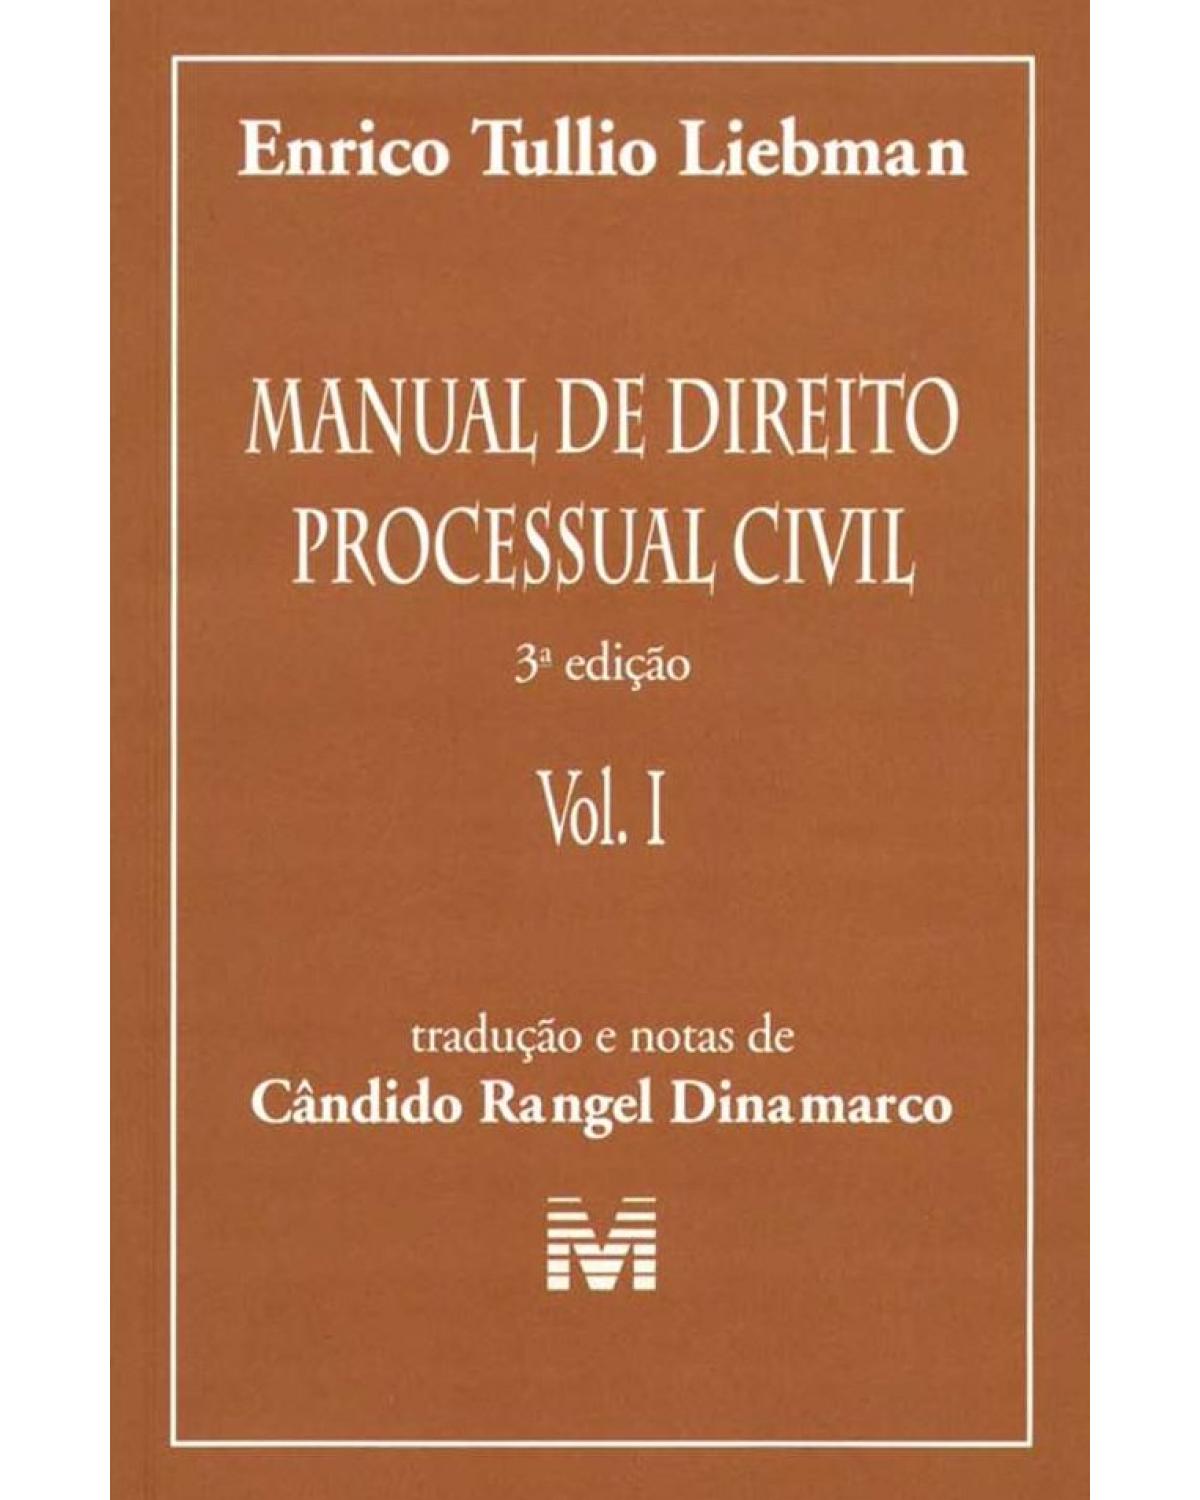 Manual de direito processual civil - 3ª Edição